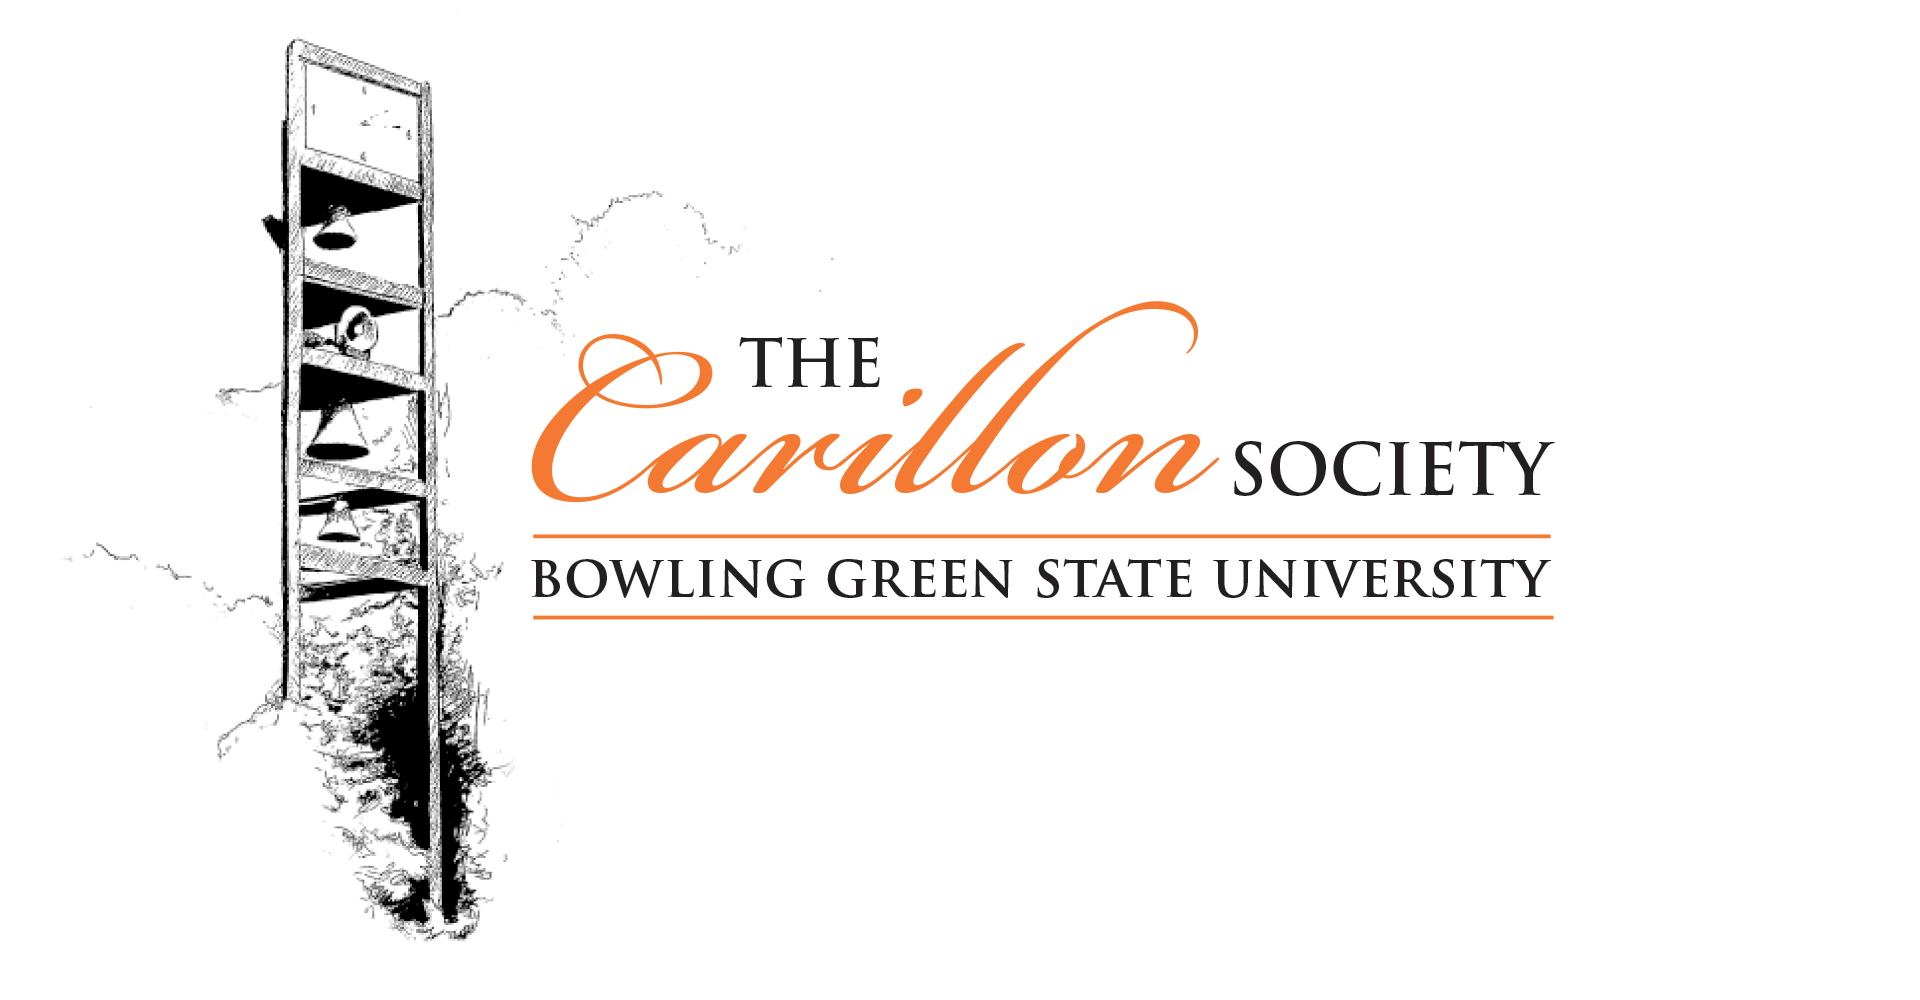 the Carillon Society